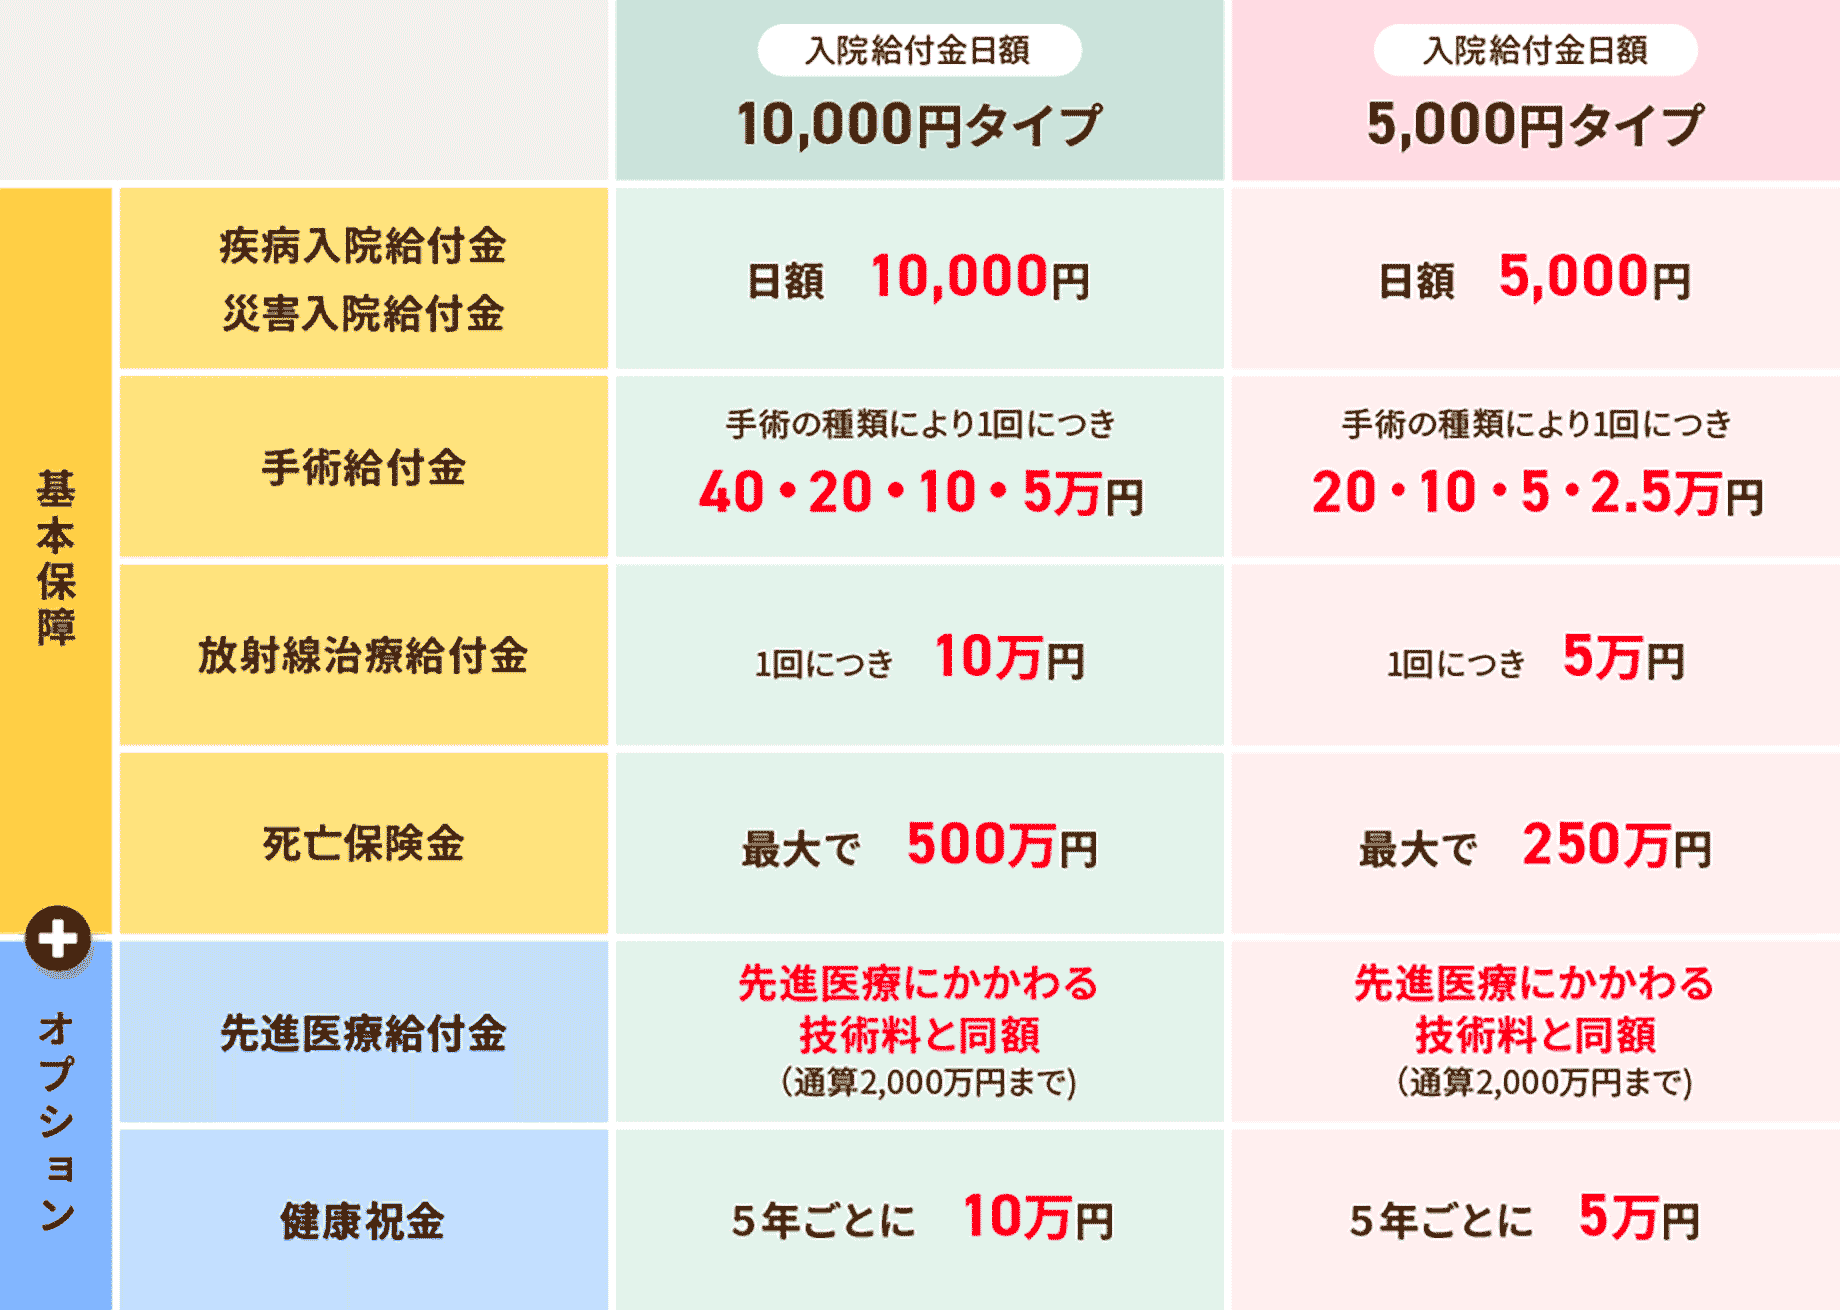 【入院給付金日額】10,000円タイプ【入院給付金日額】5,000円タイプ